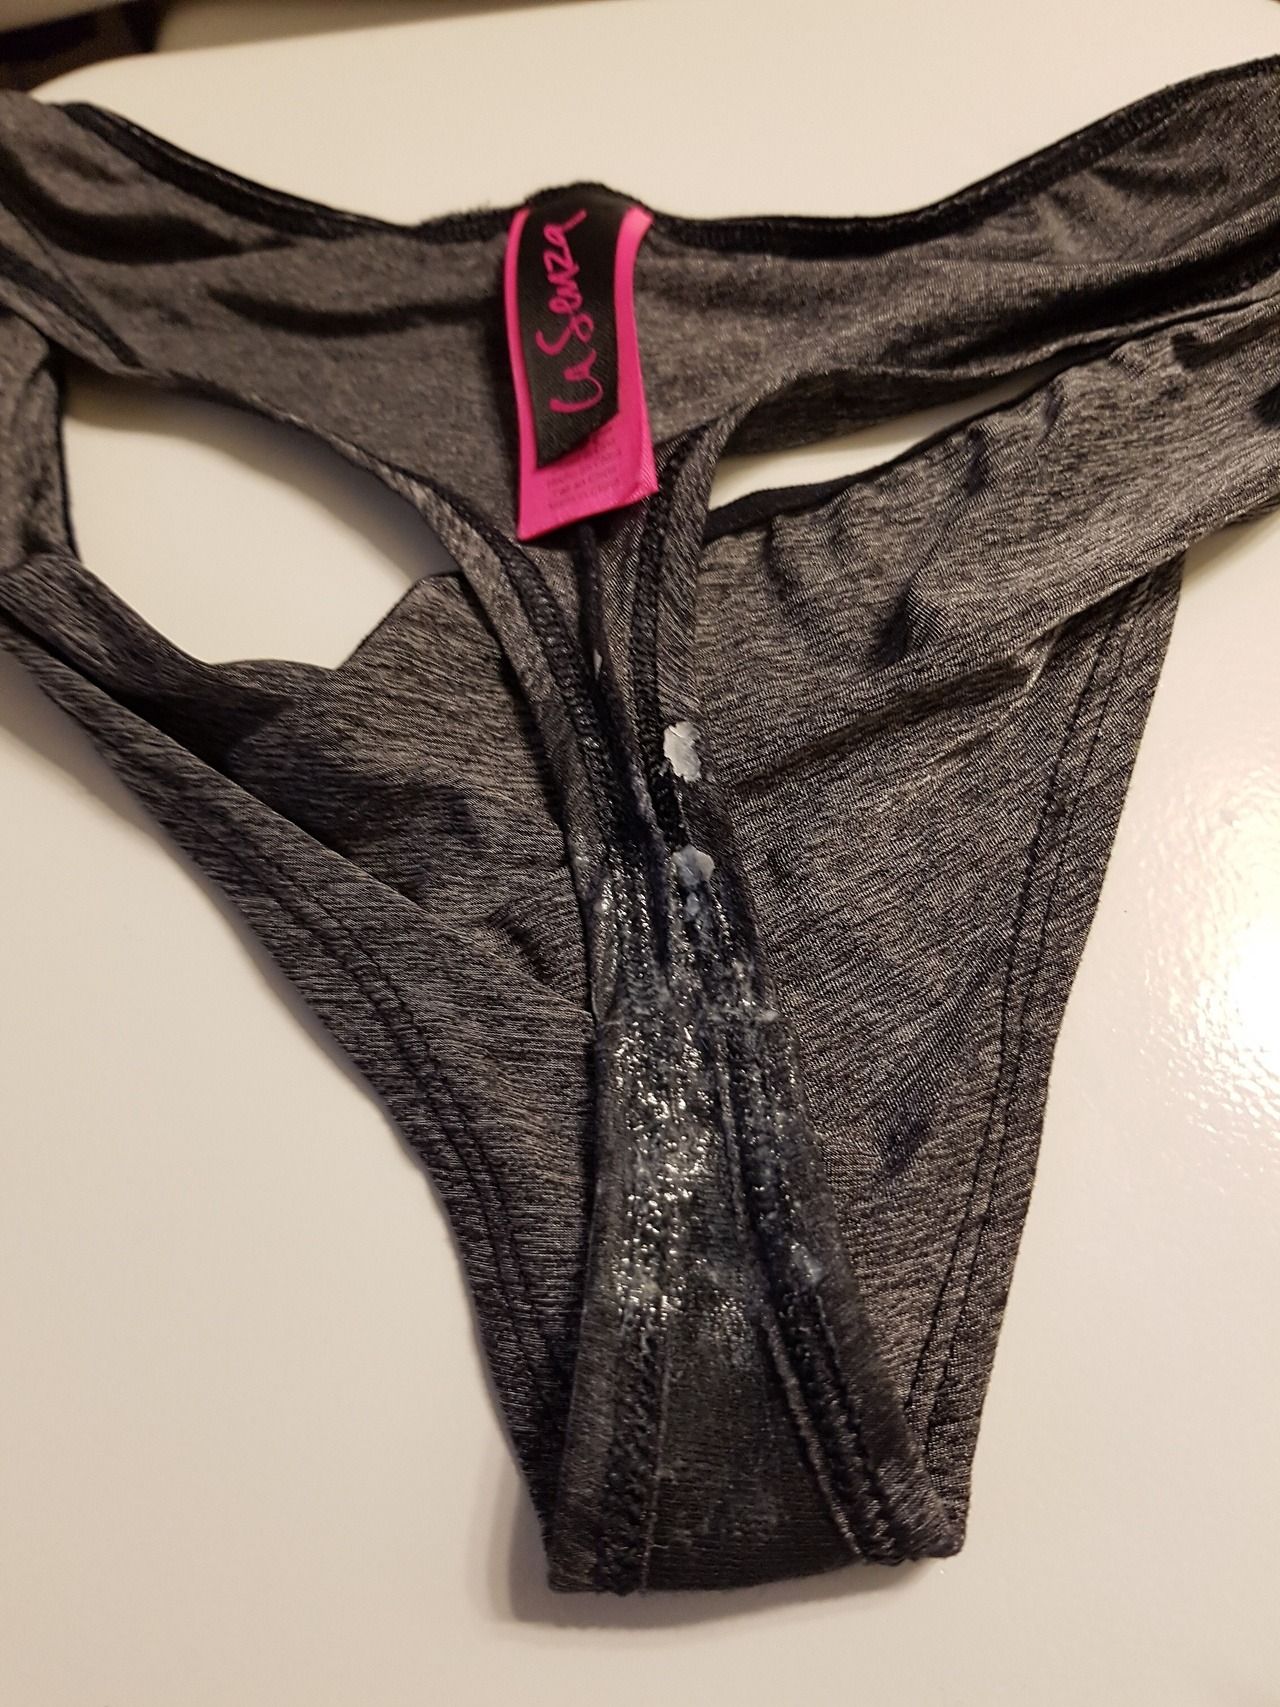 used panties (28)